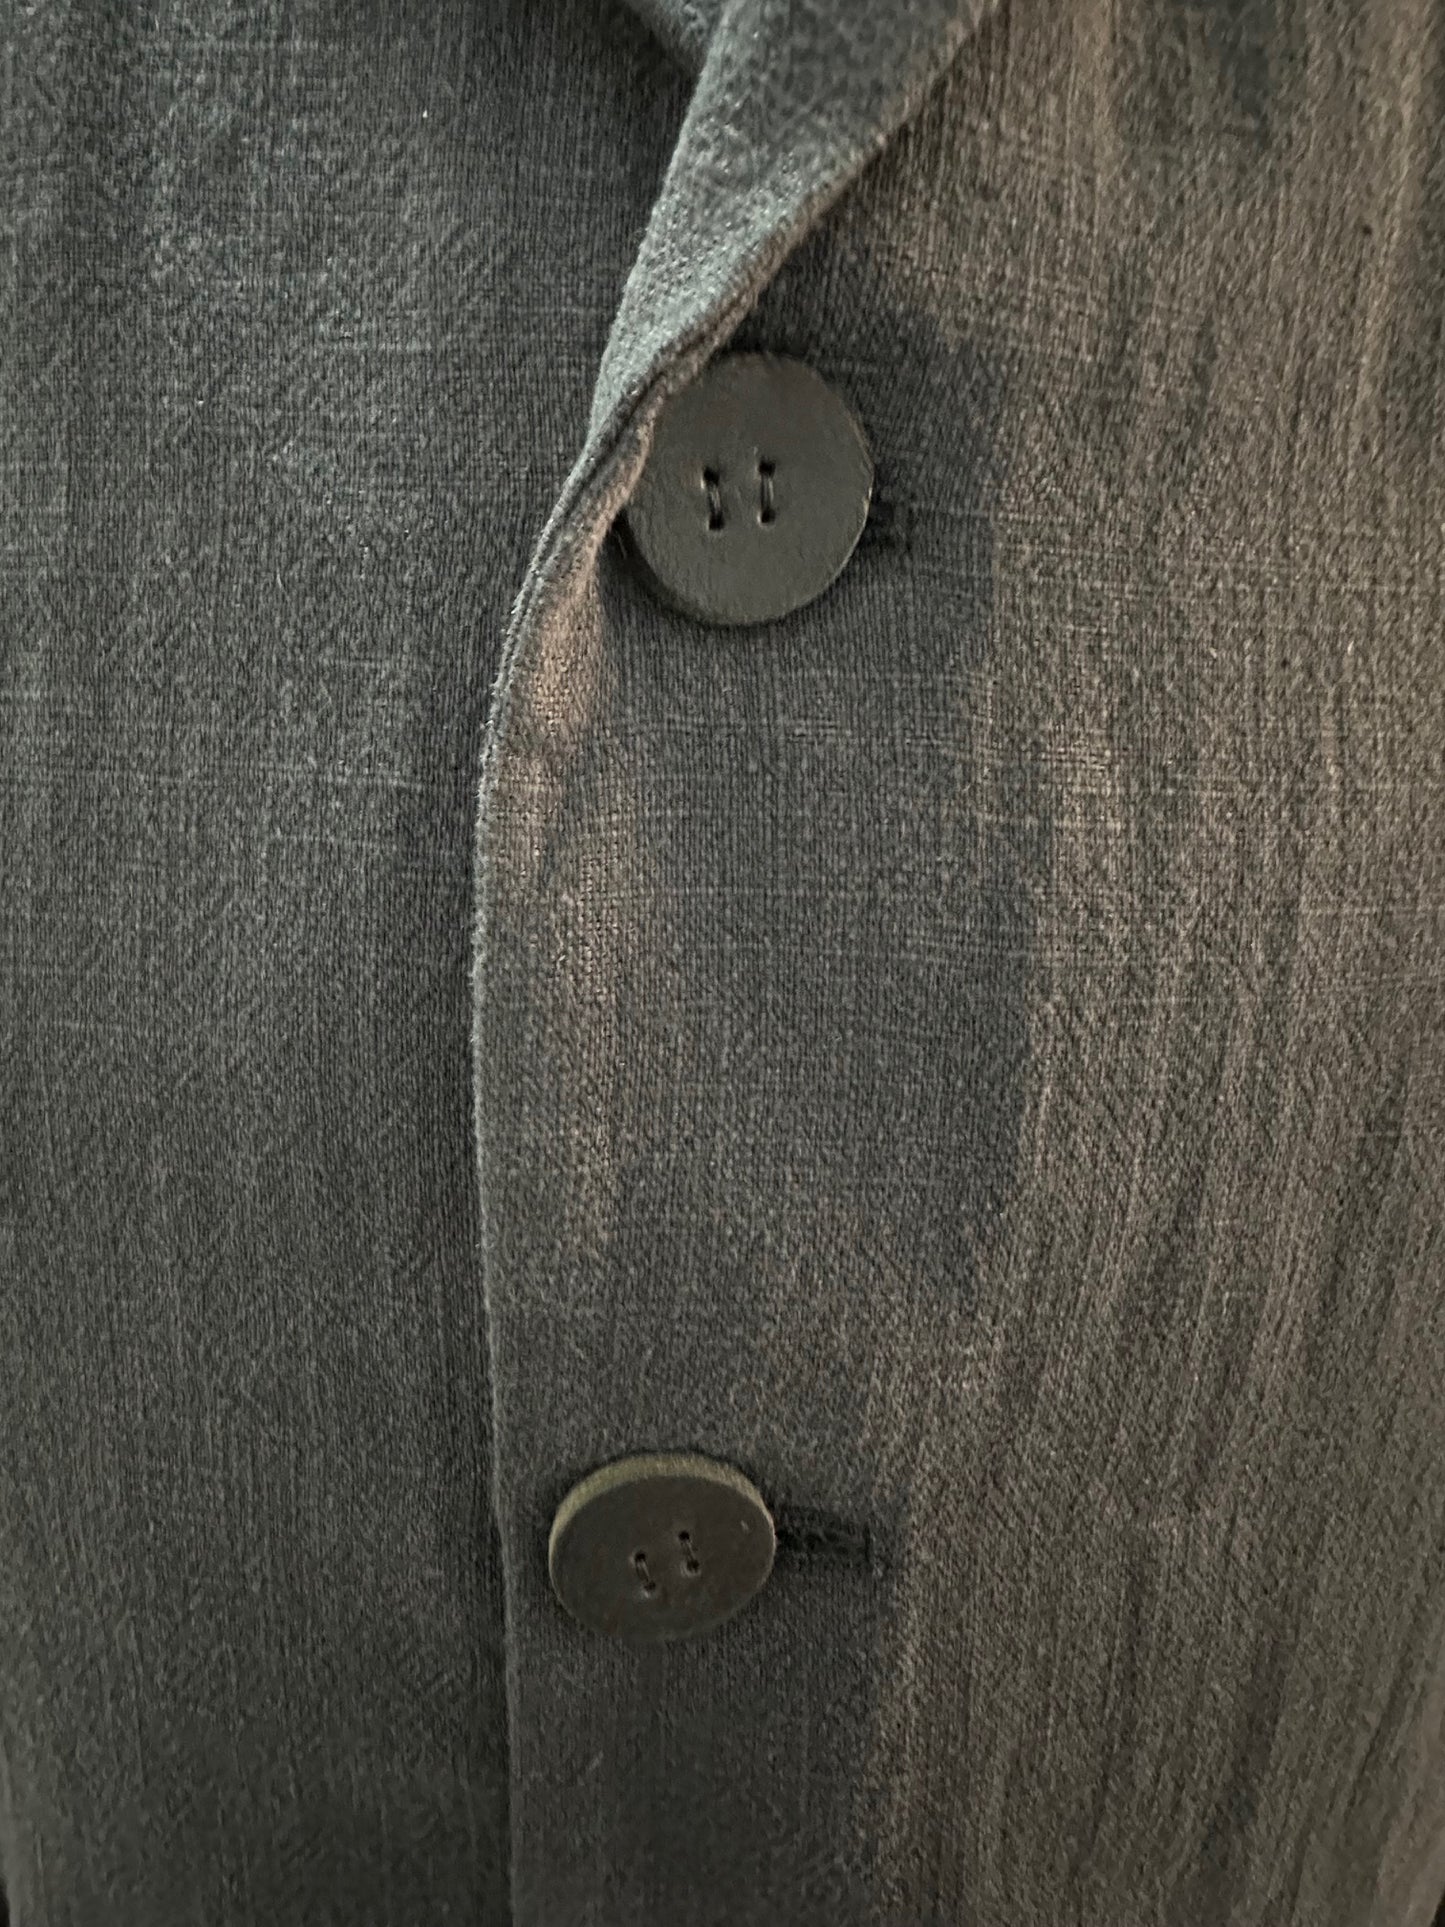 Black Indigo Cotton Linen with Leather Trim 3-Button Short Soft Blazer